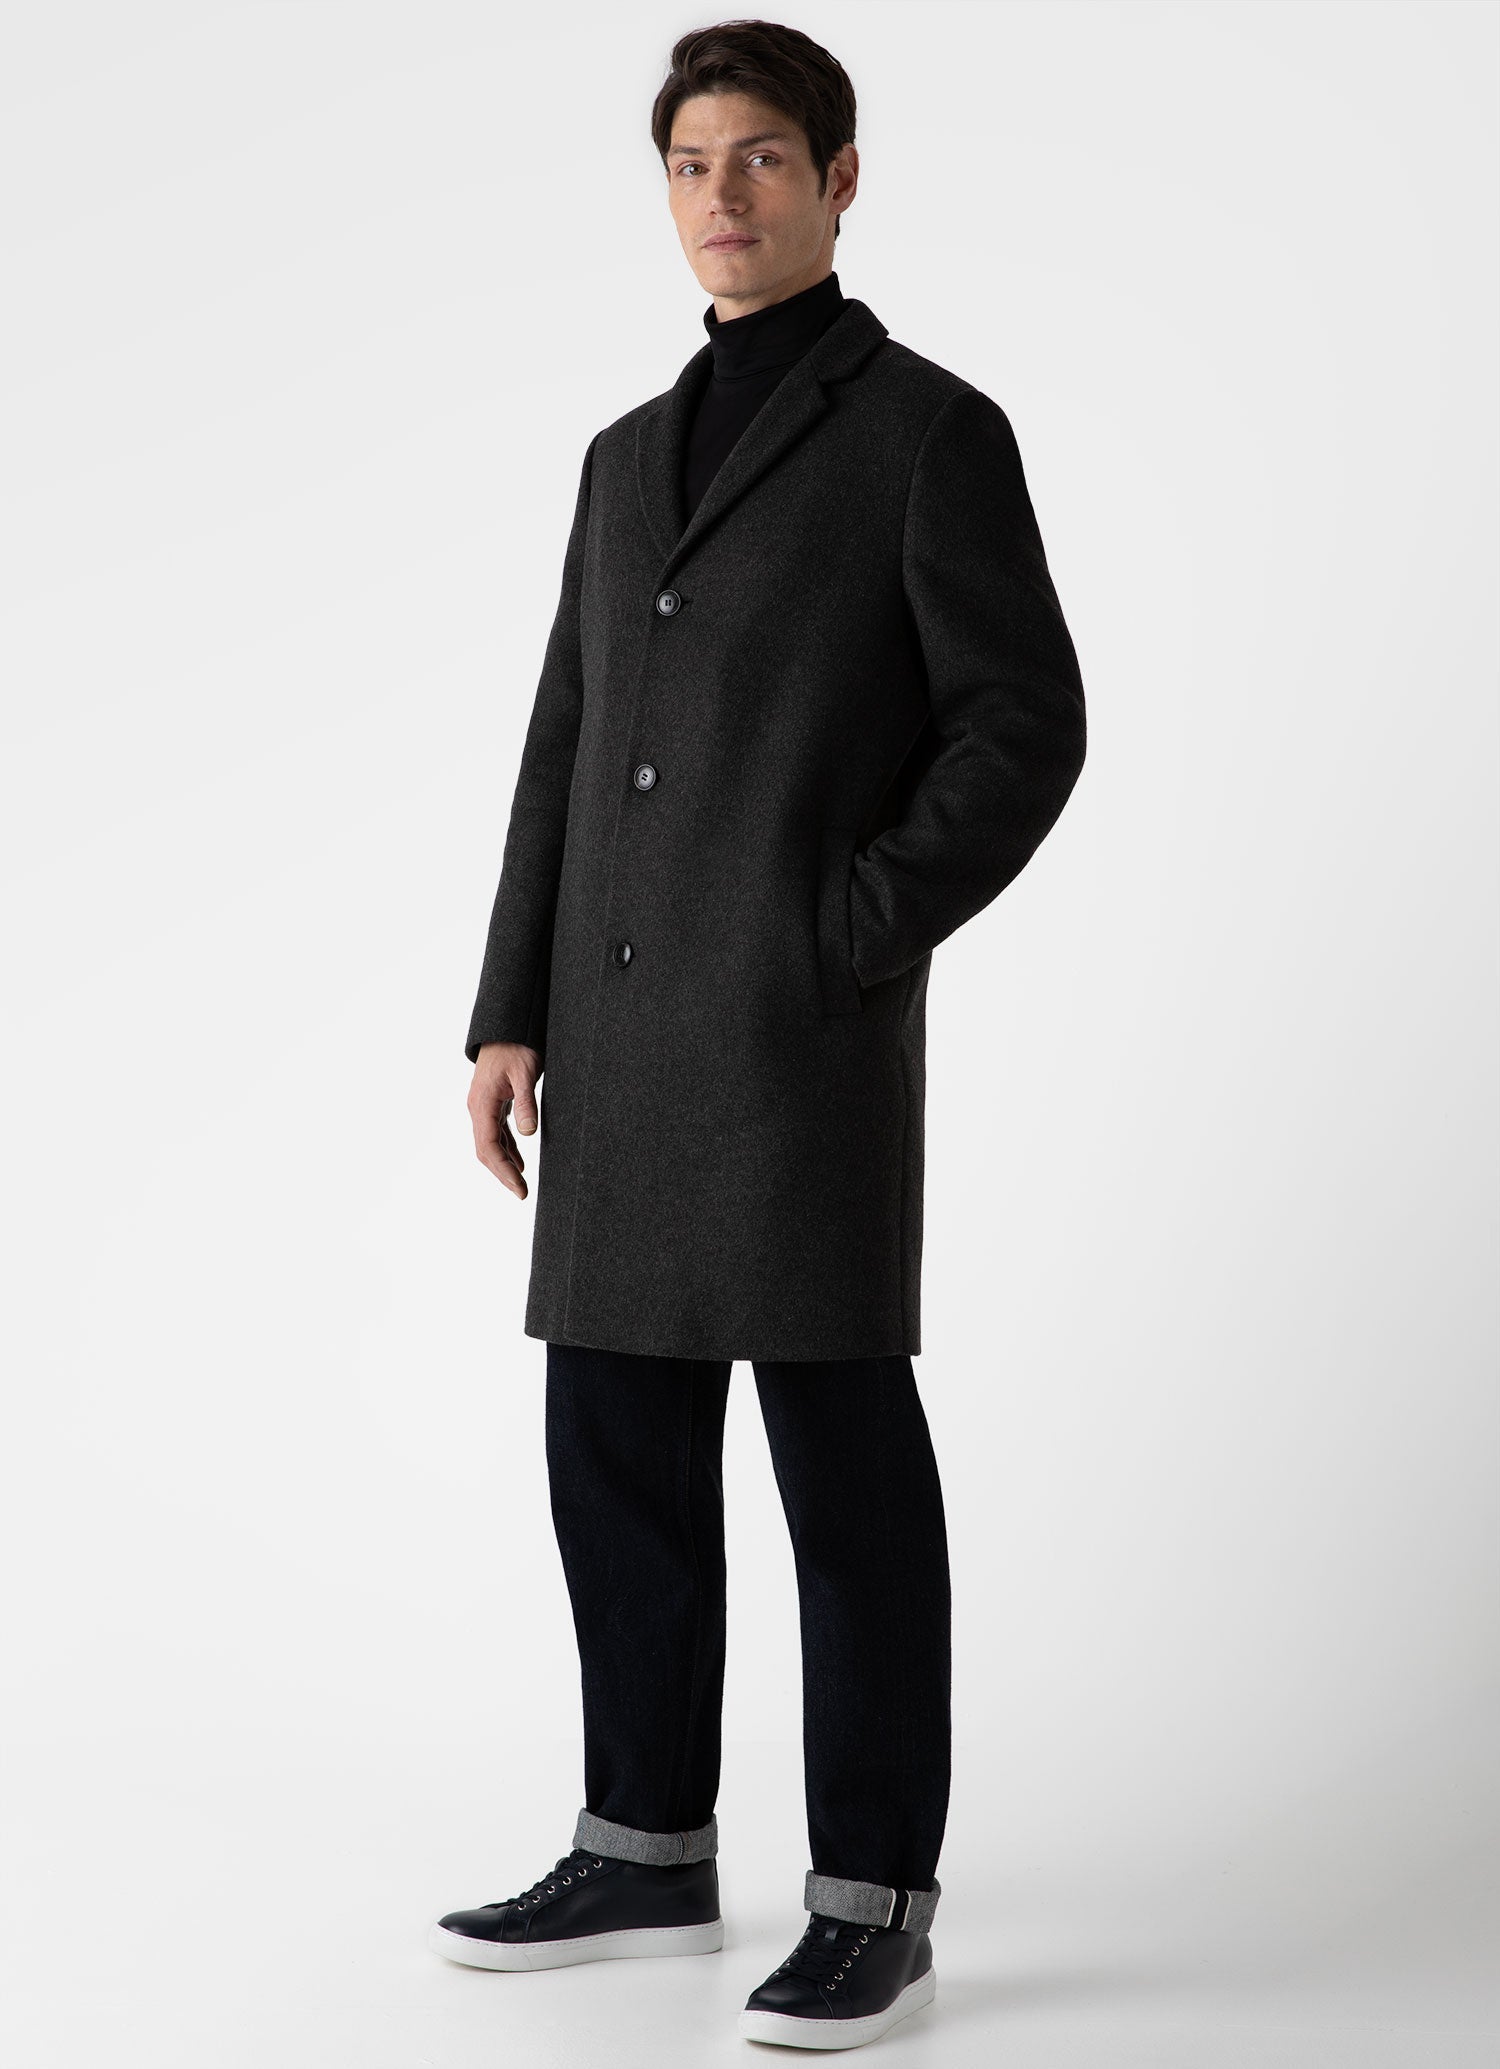 Men's Wool Cashmere Overcoat in Charcoal Melange